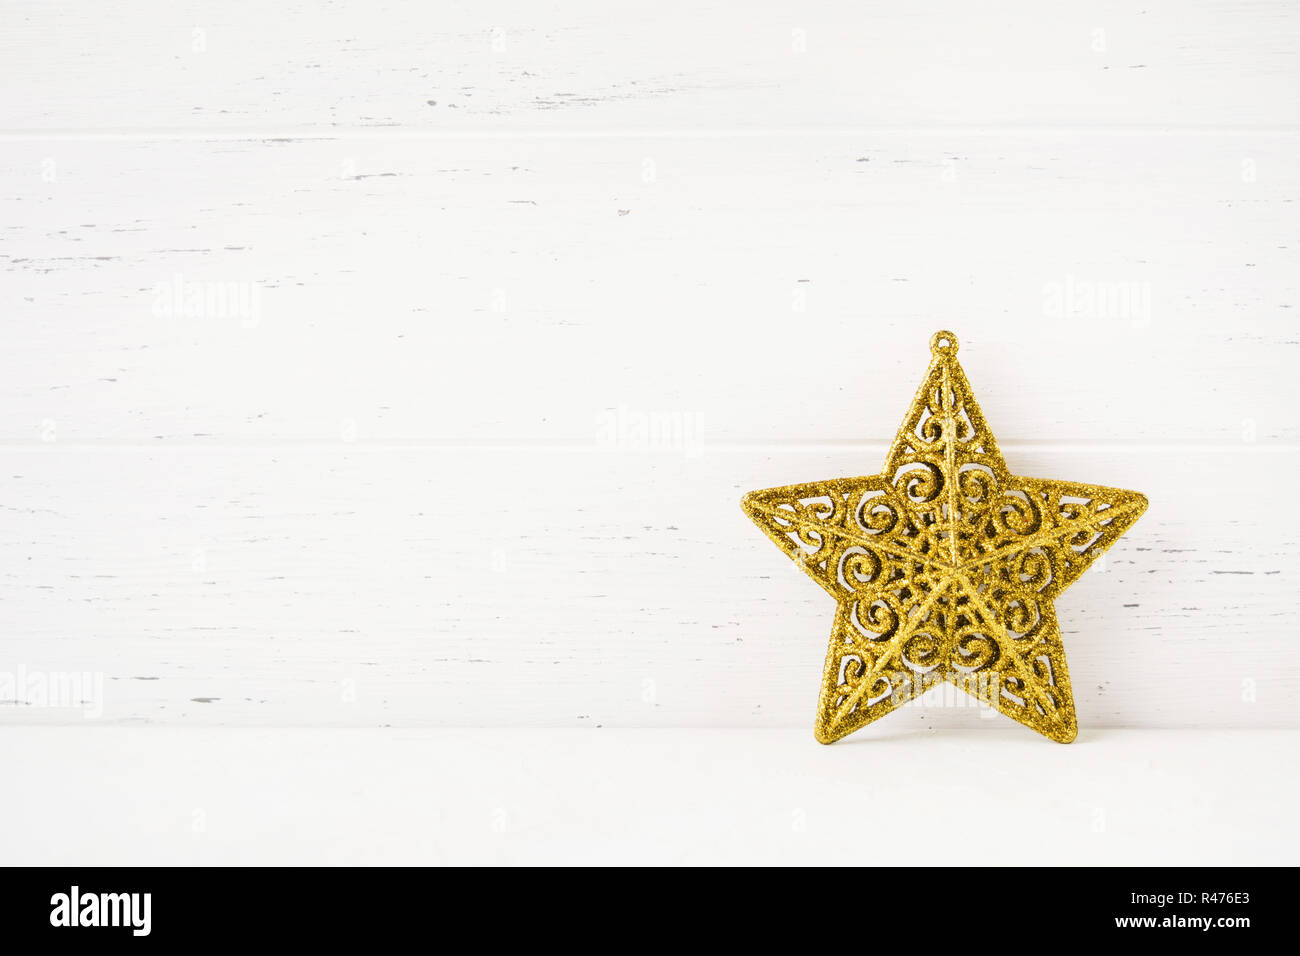 Neues Jahr und Weihnachten Gold Star Ornament mit Kopie Raum, selektiven Fokus Stockfoto